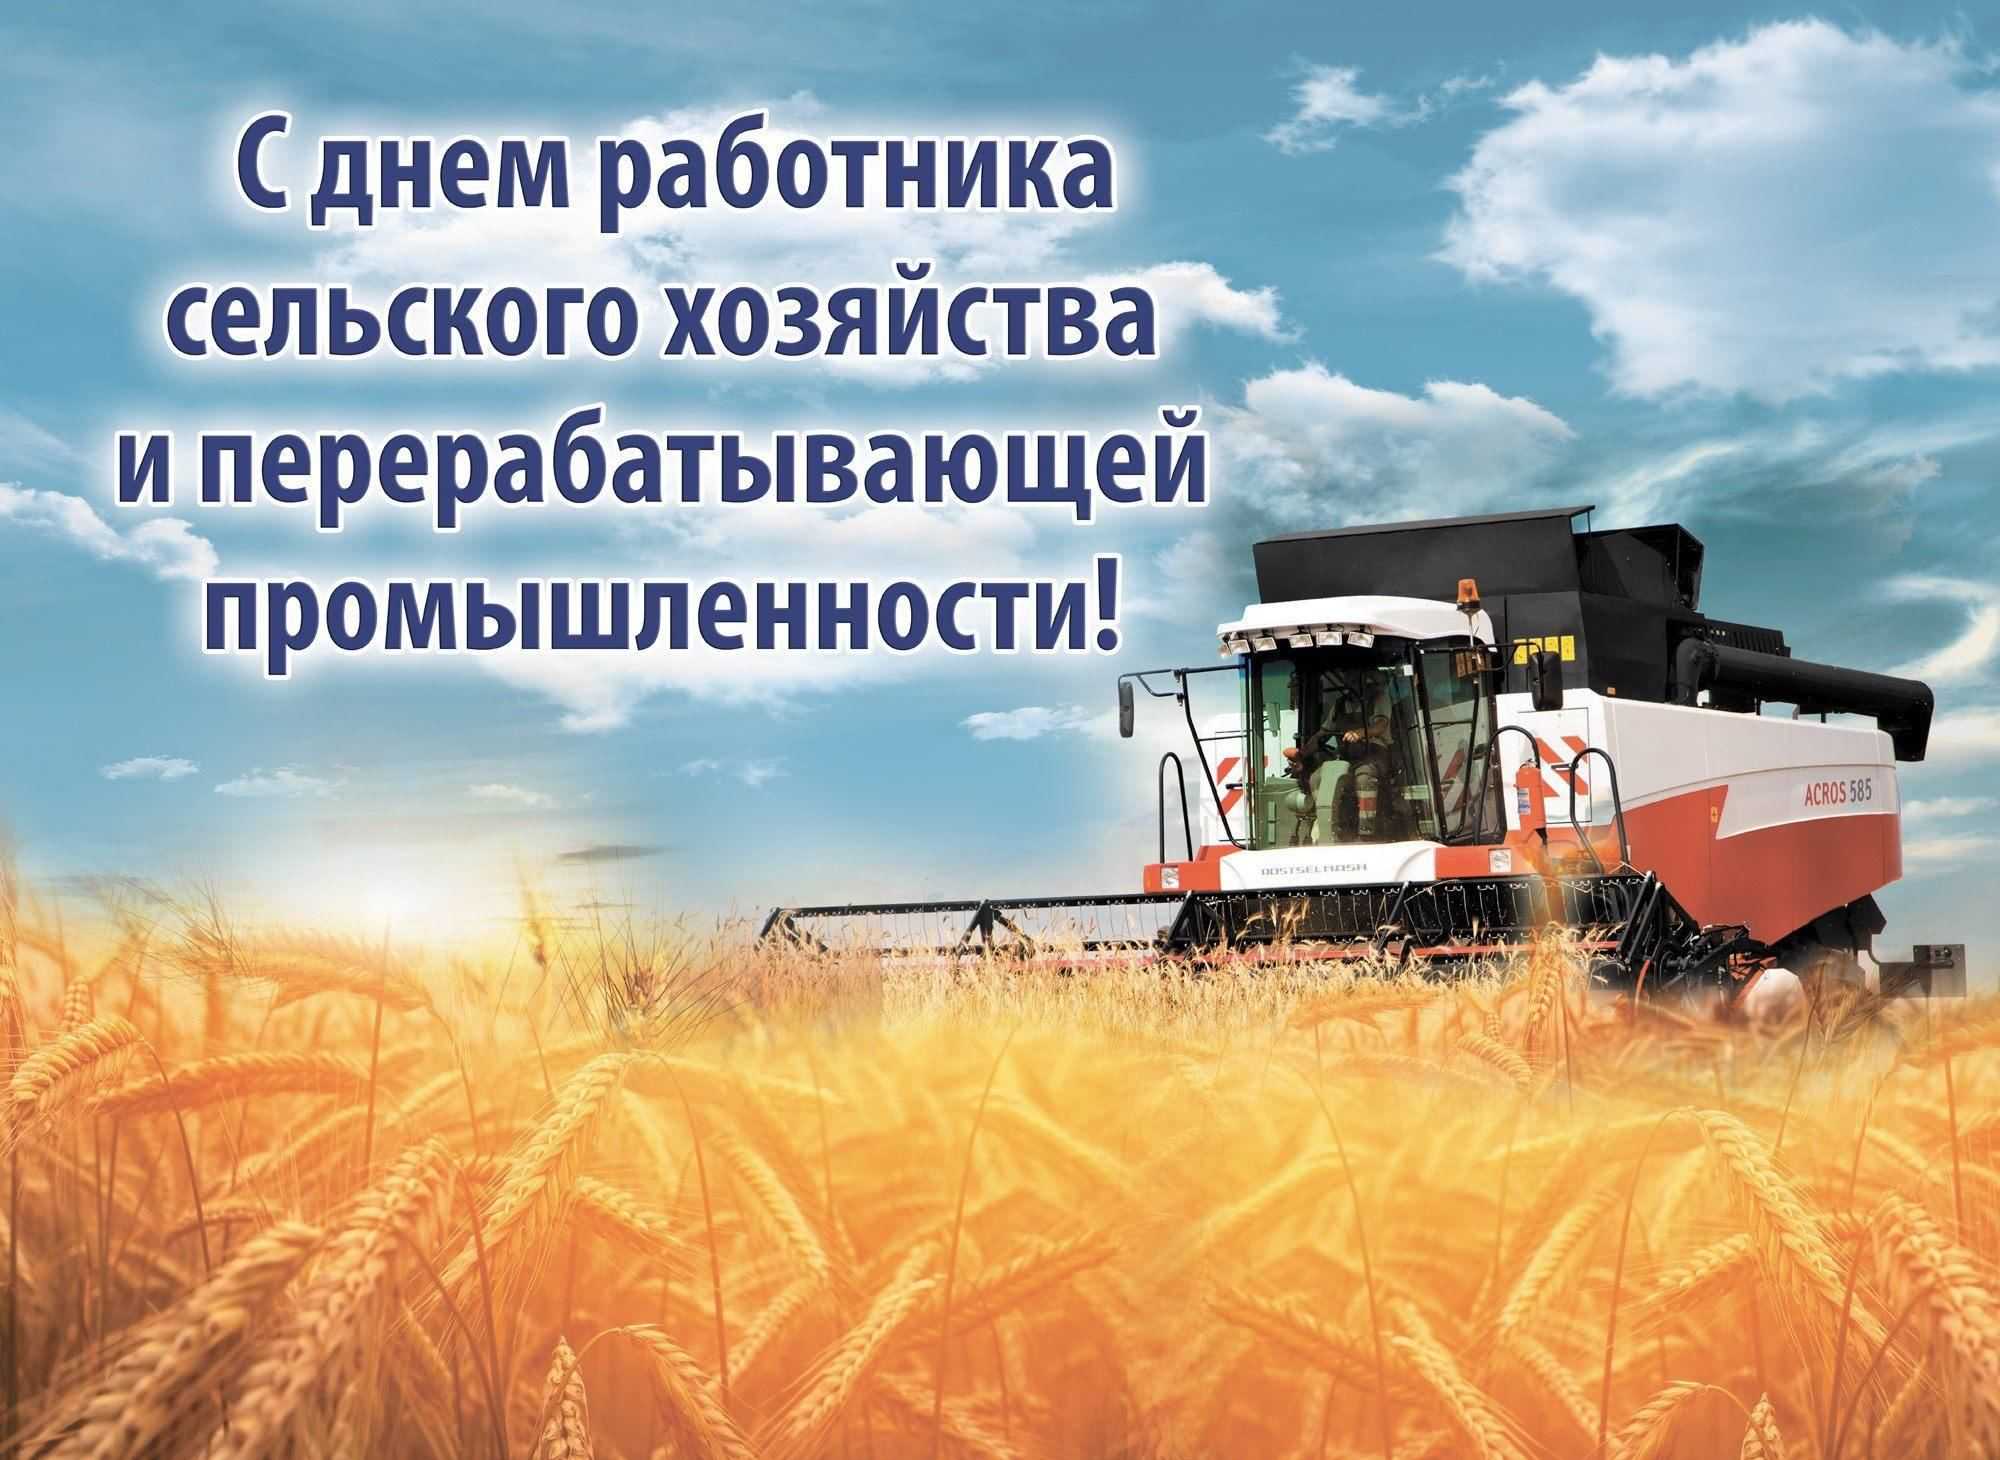 Поздравления с днем работника сельского хозяйства мужчине — 11 поздравлений — stost.ru  | поздравления перерабатывающей промышленности. страница 1